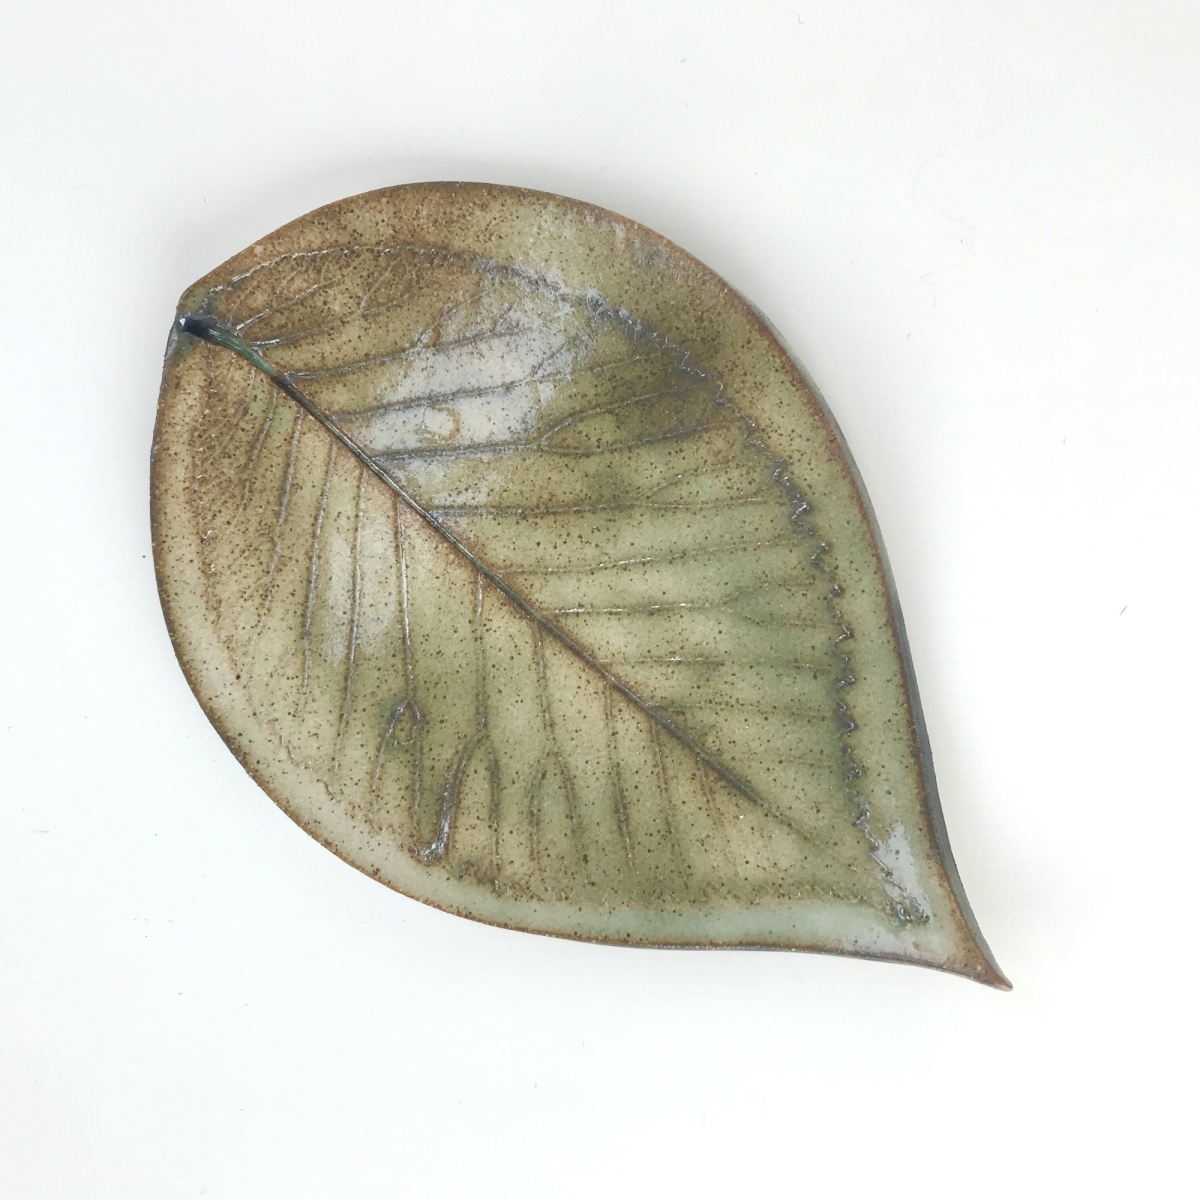 Fallen Leaf Ceramic Wall Art by Sonya Ceramic Art - Rustic Green Hornbeam Leaf Design